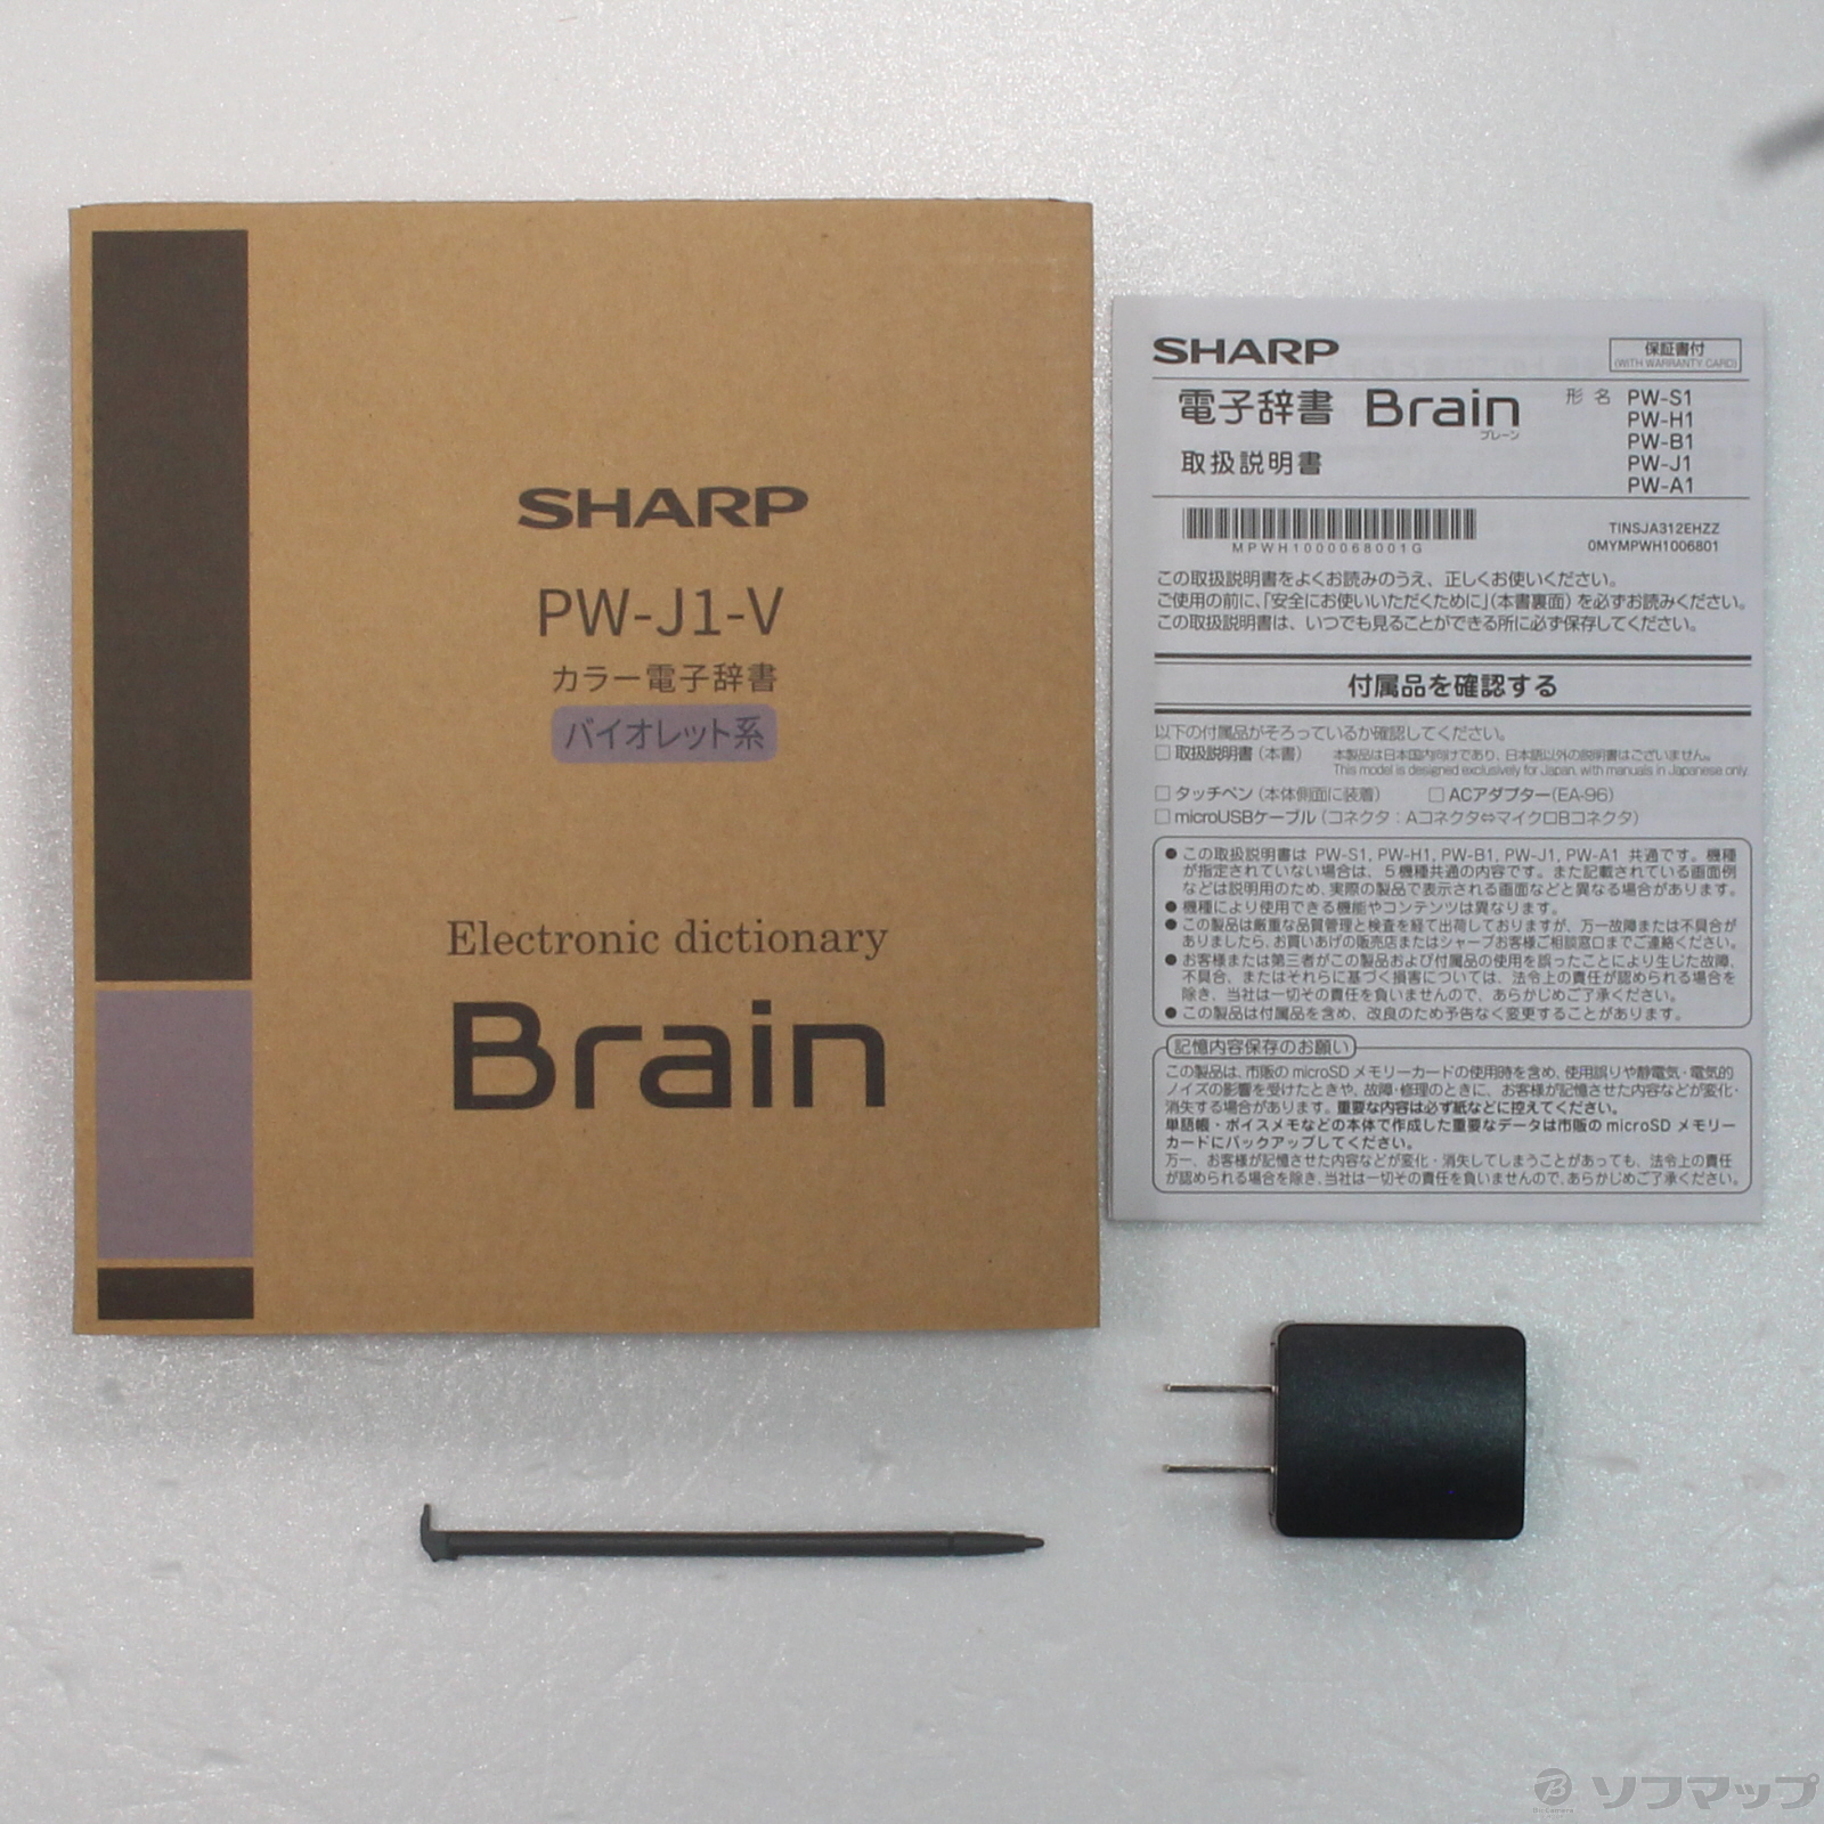 シャープ PW-J1-V カラー電子辞書 Brain 中学生モデル バイオレット系 - 3